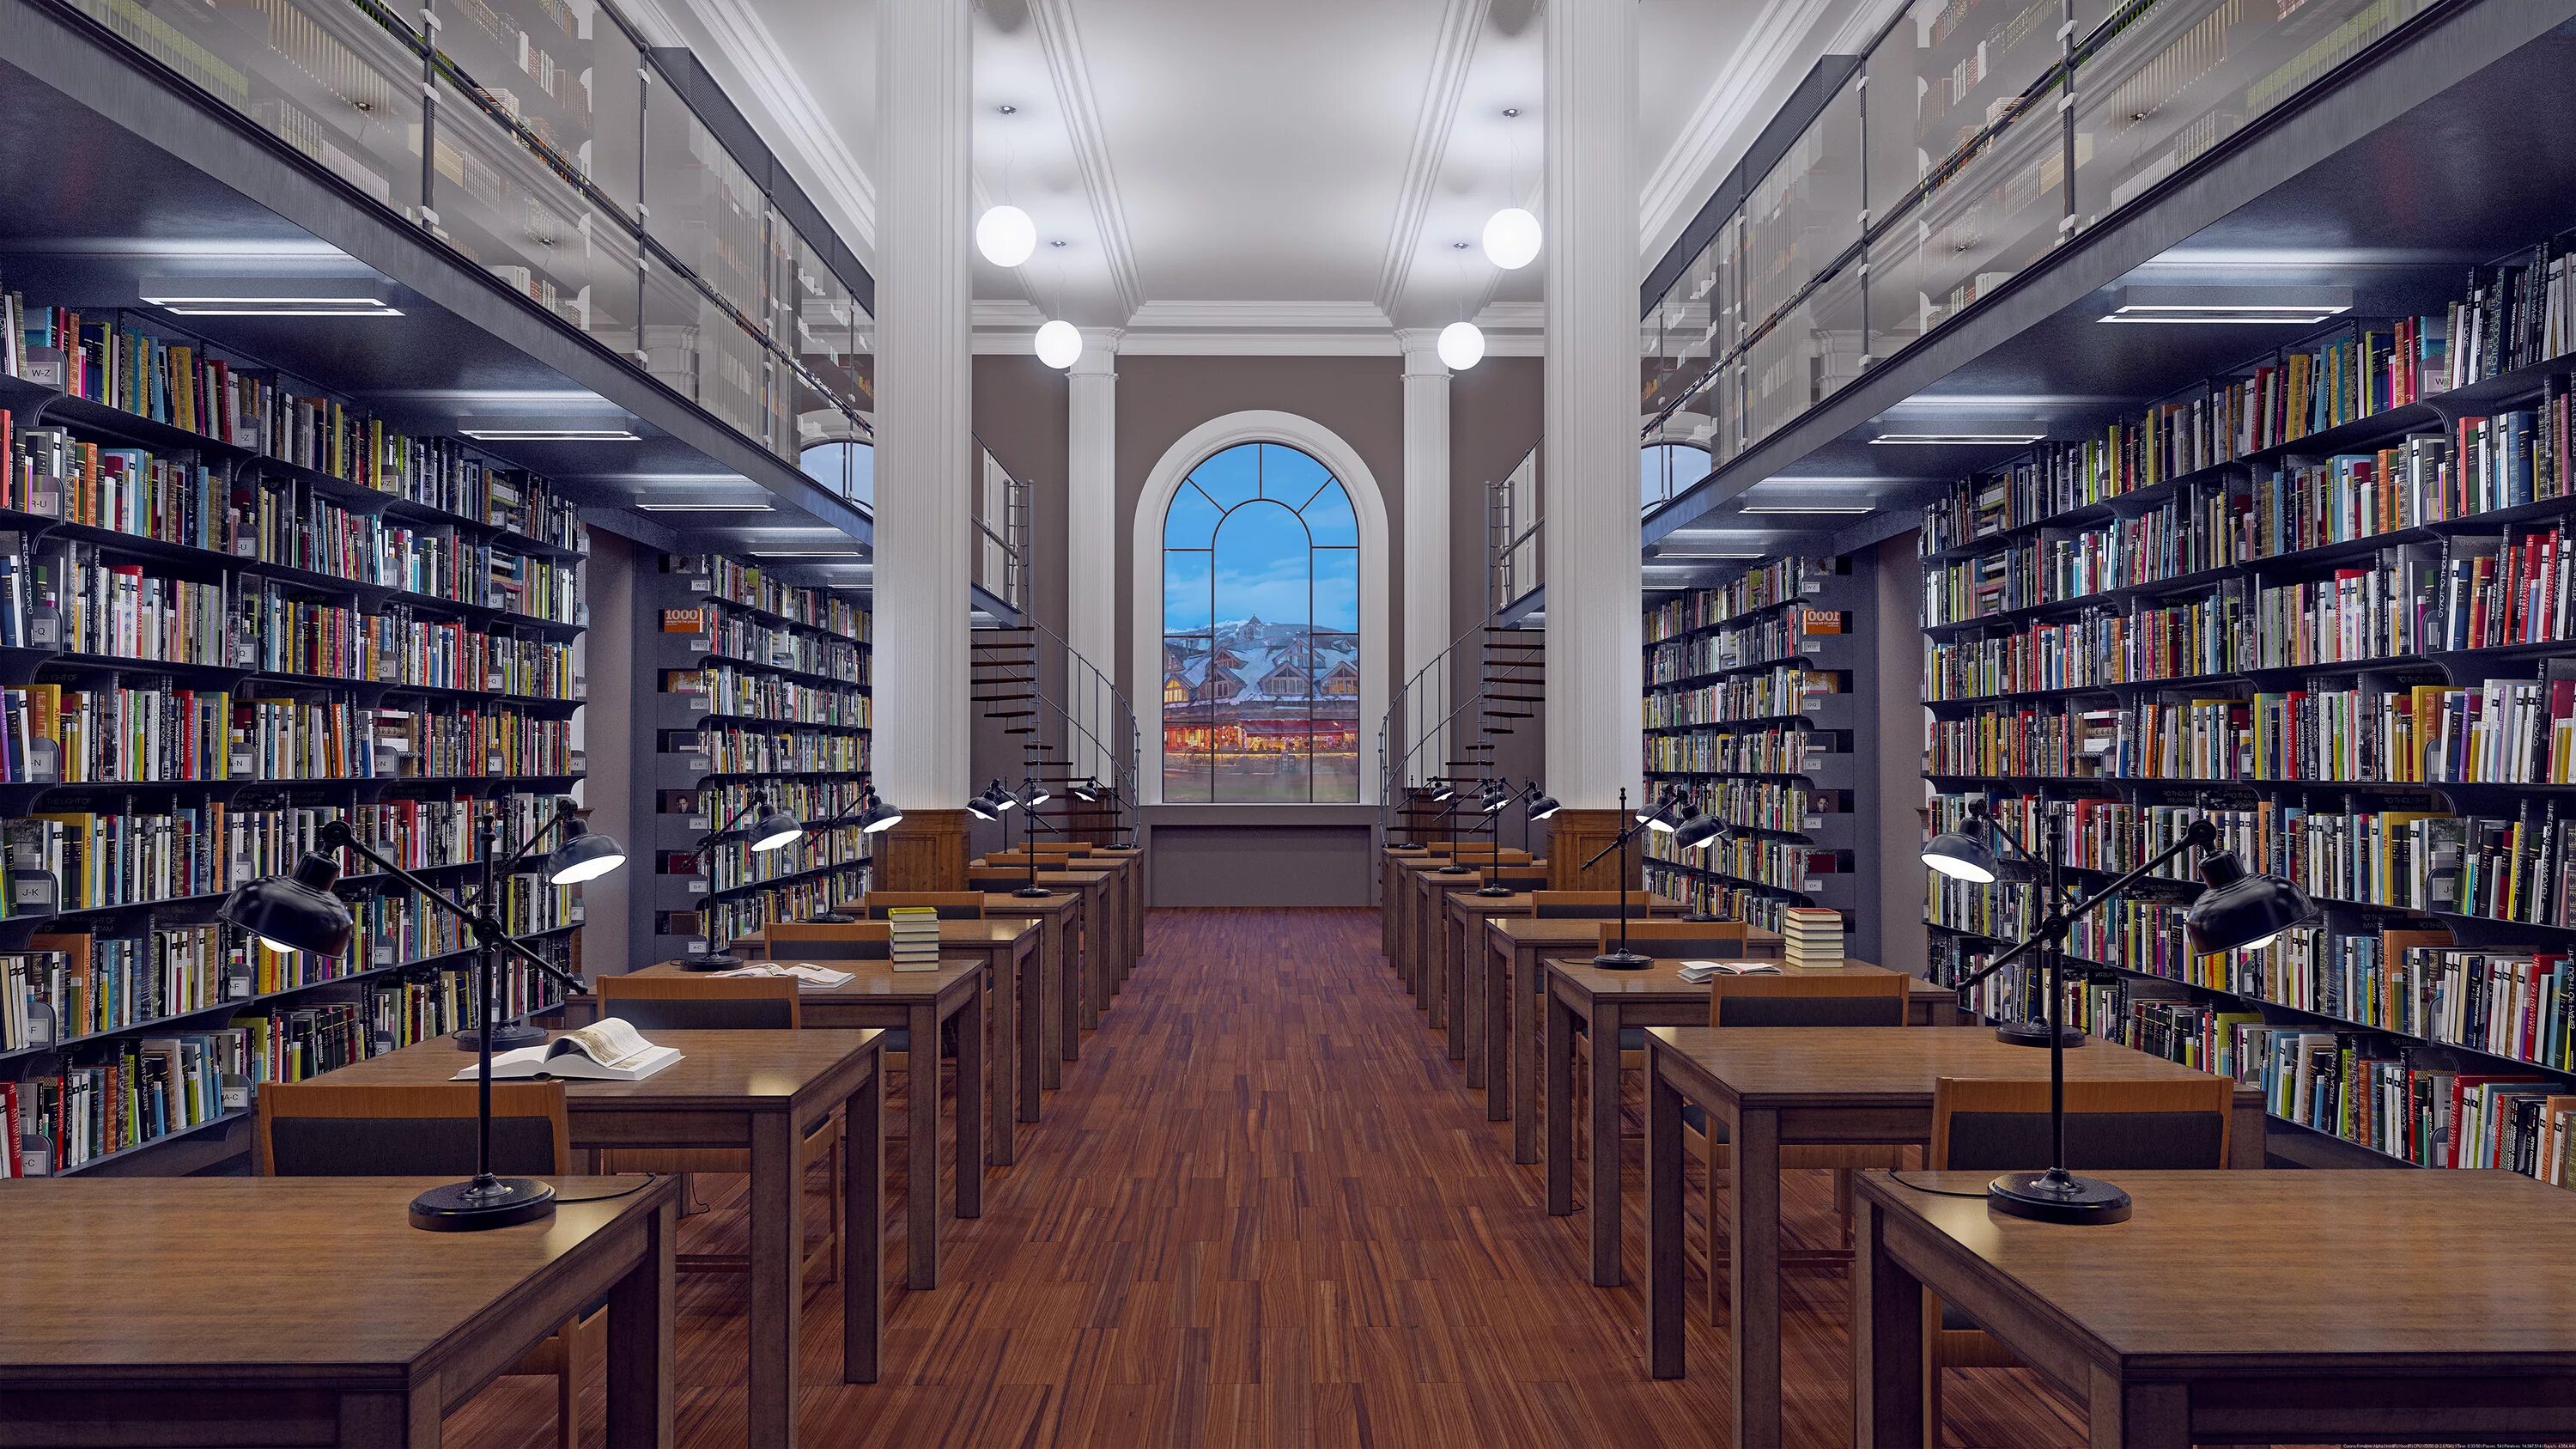 Xz library. Читательный зал в библиотеке в Великобритании. Библиотека в Москве читательный зал. Читальный зал в библиотеке. Зал библиотеки.